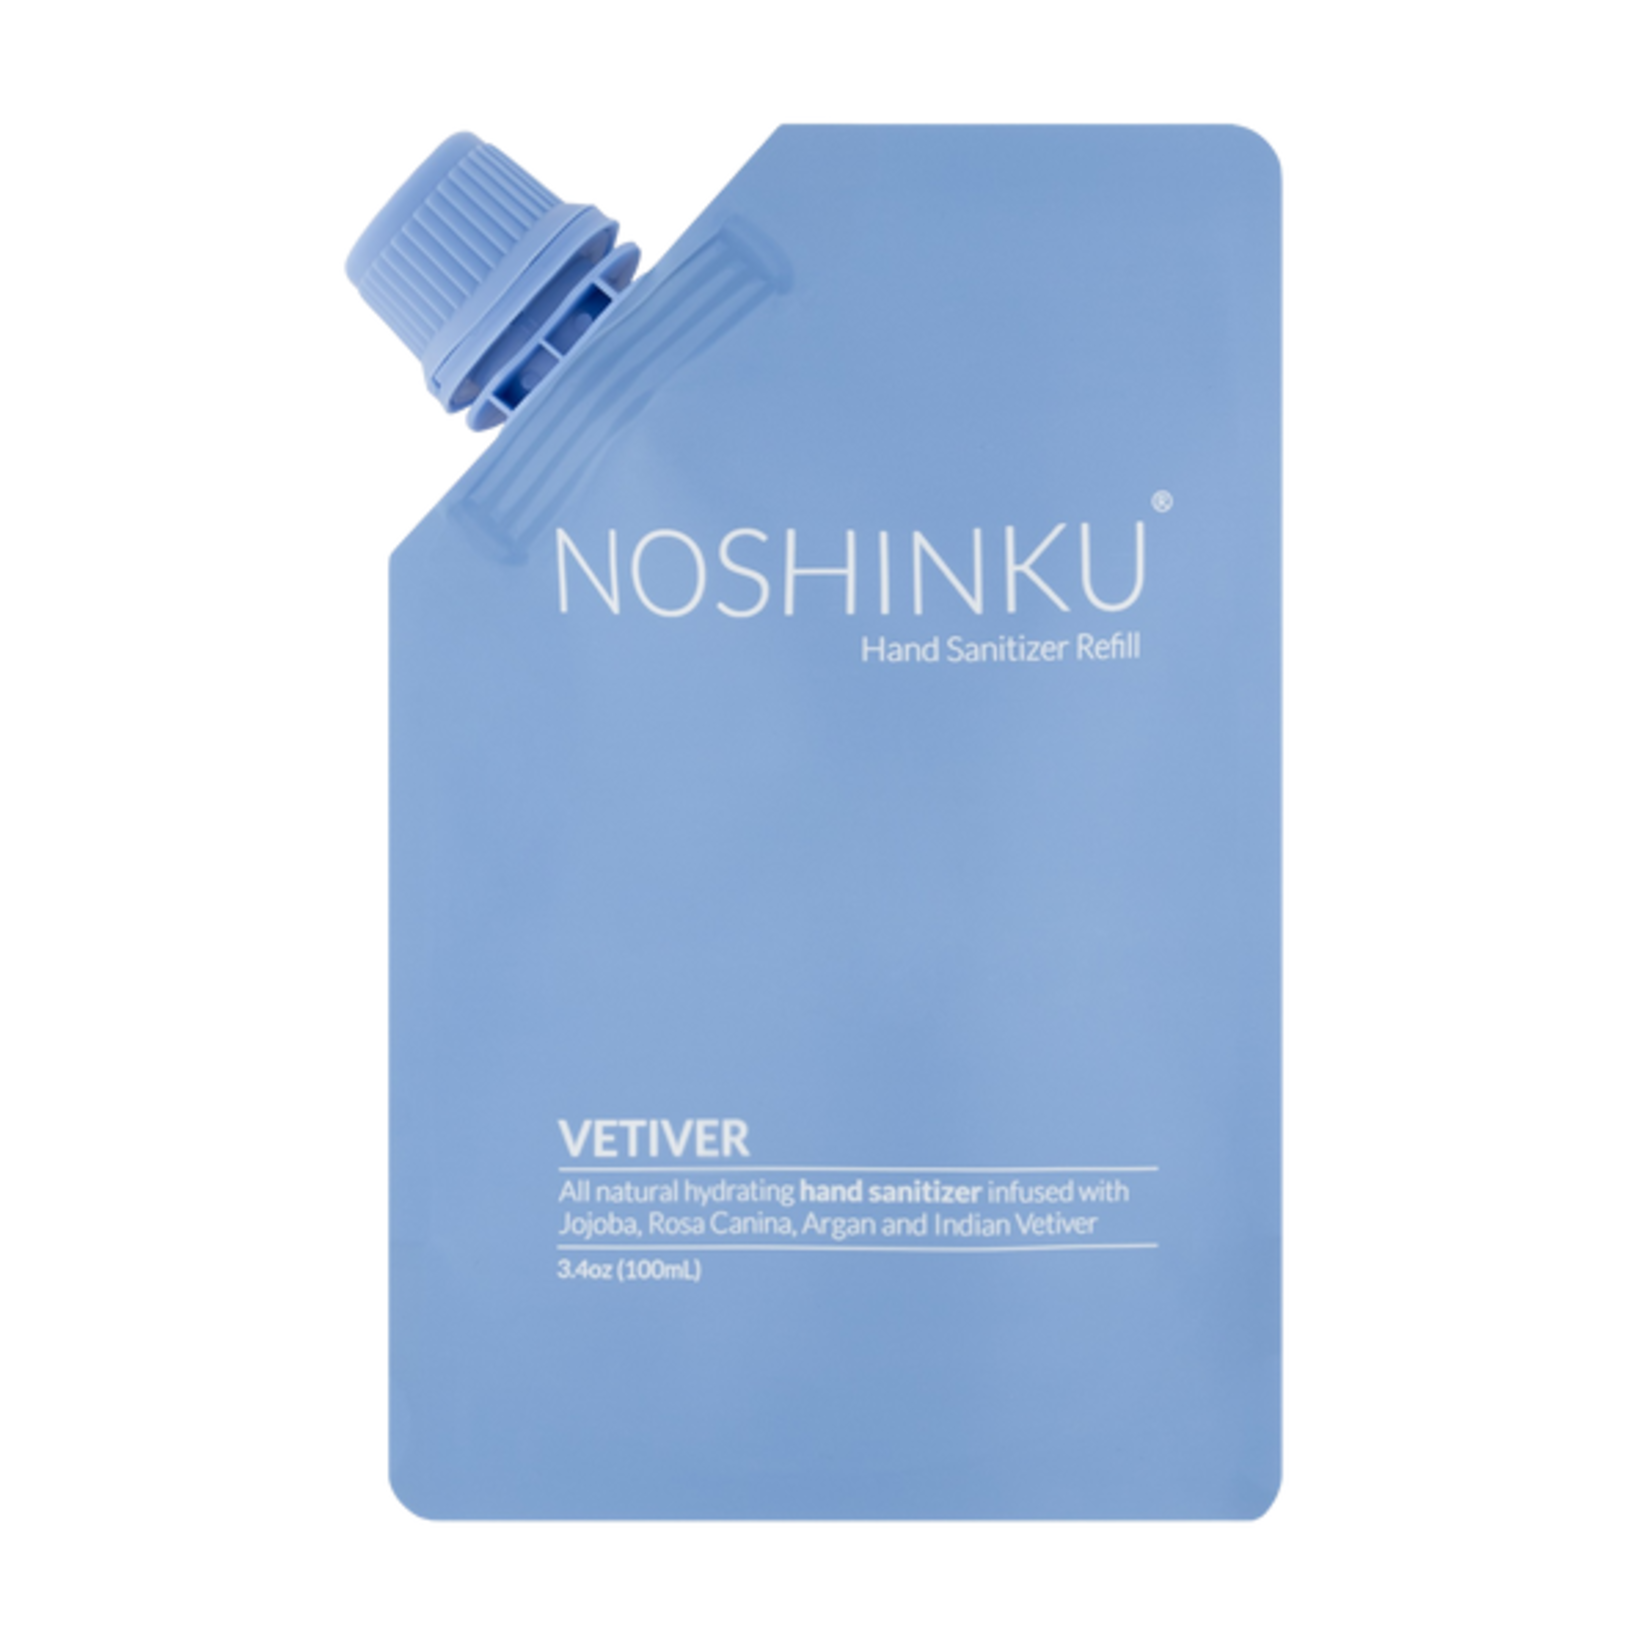 Noshinku, Inc. Noshinku VETIVER POCKET SANITIZER REFILL POUCH